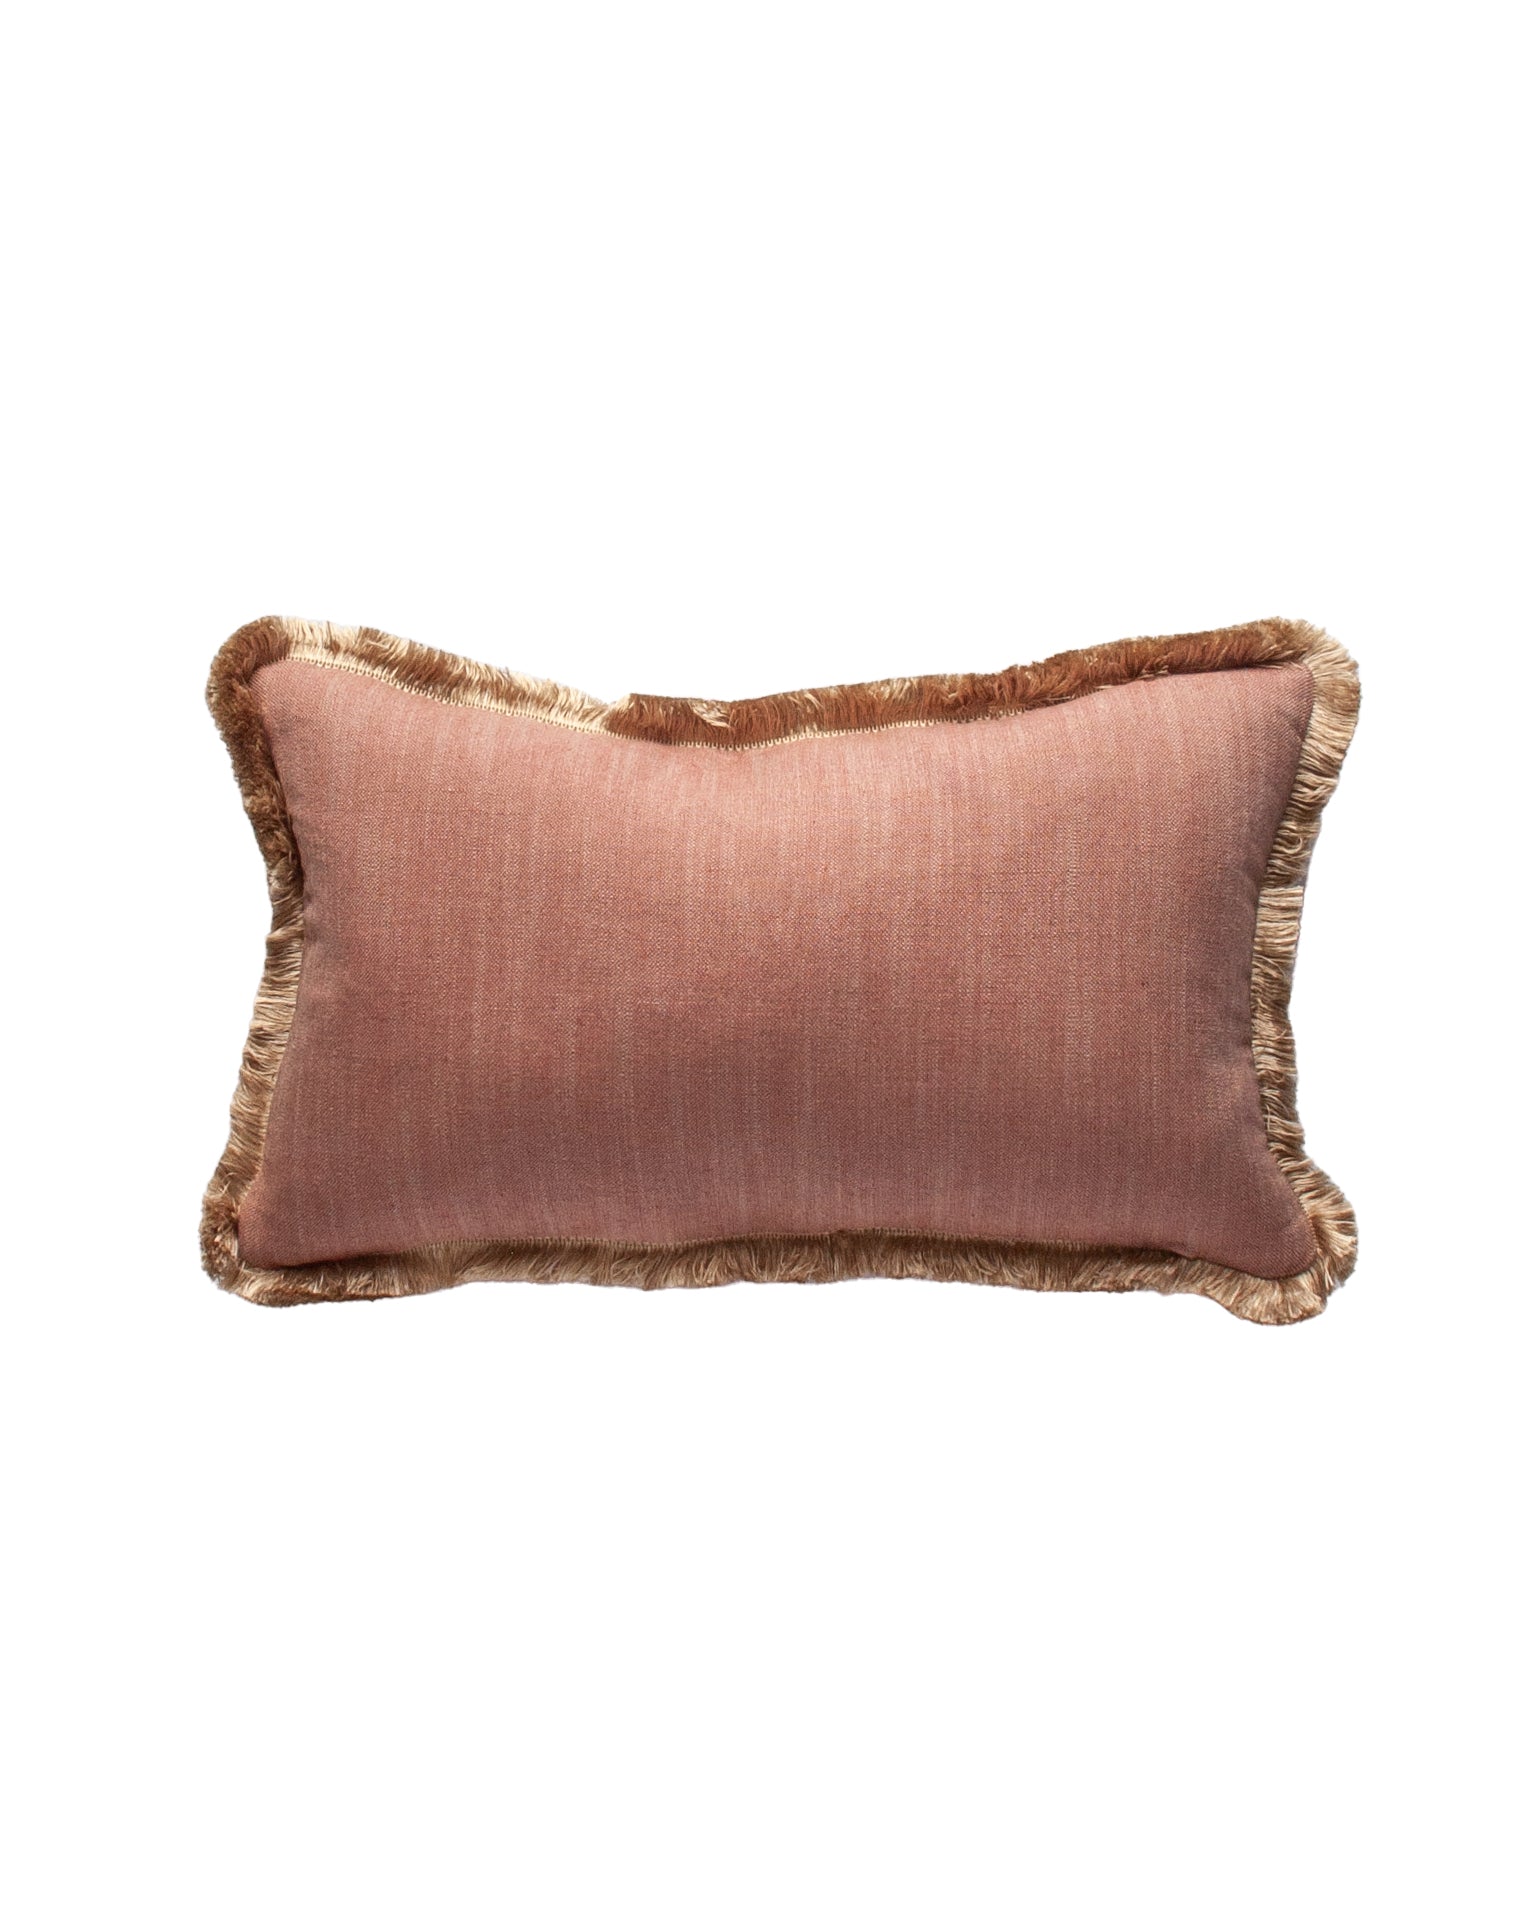 The Arabella Rectangular Cushion